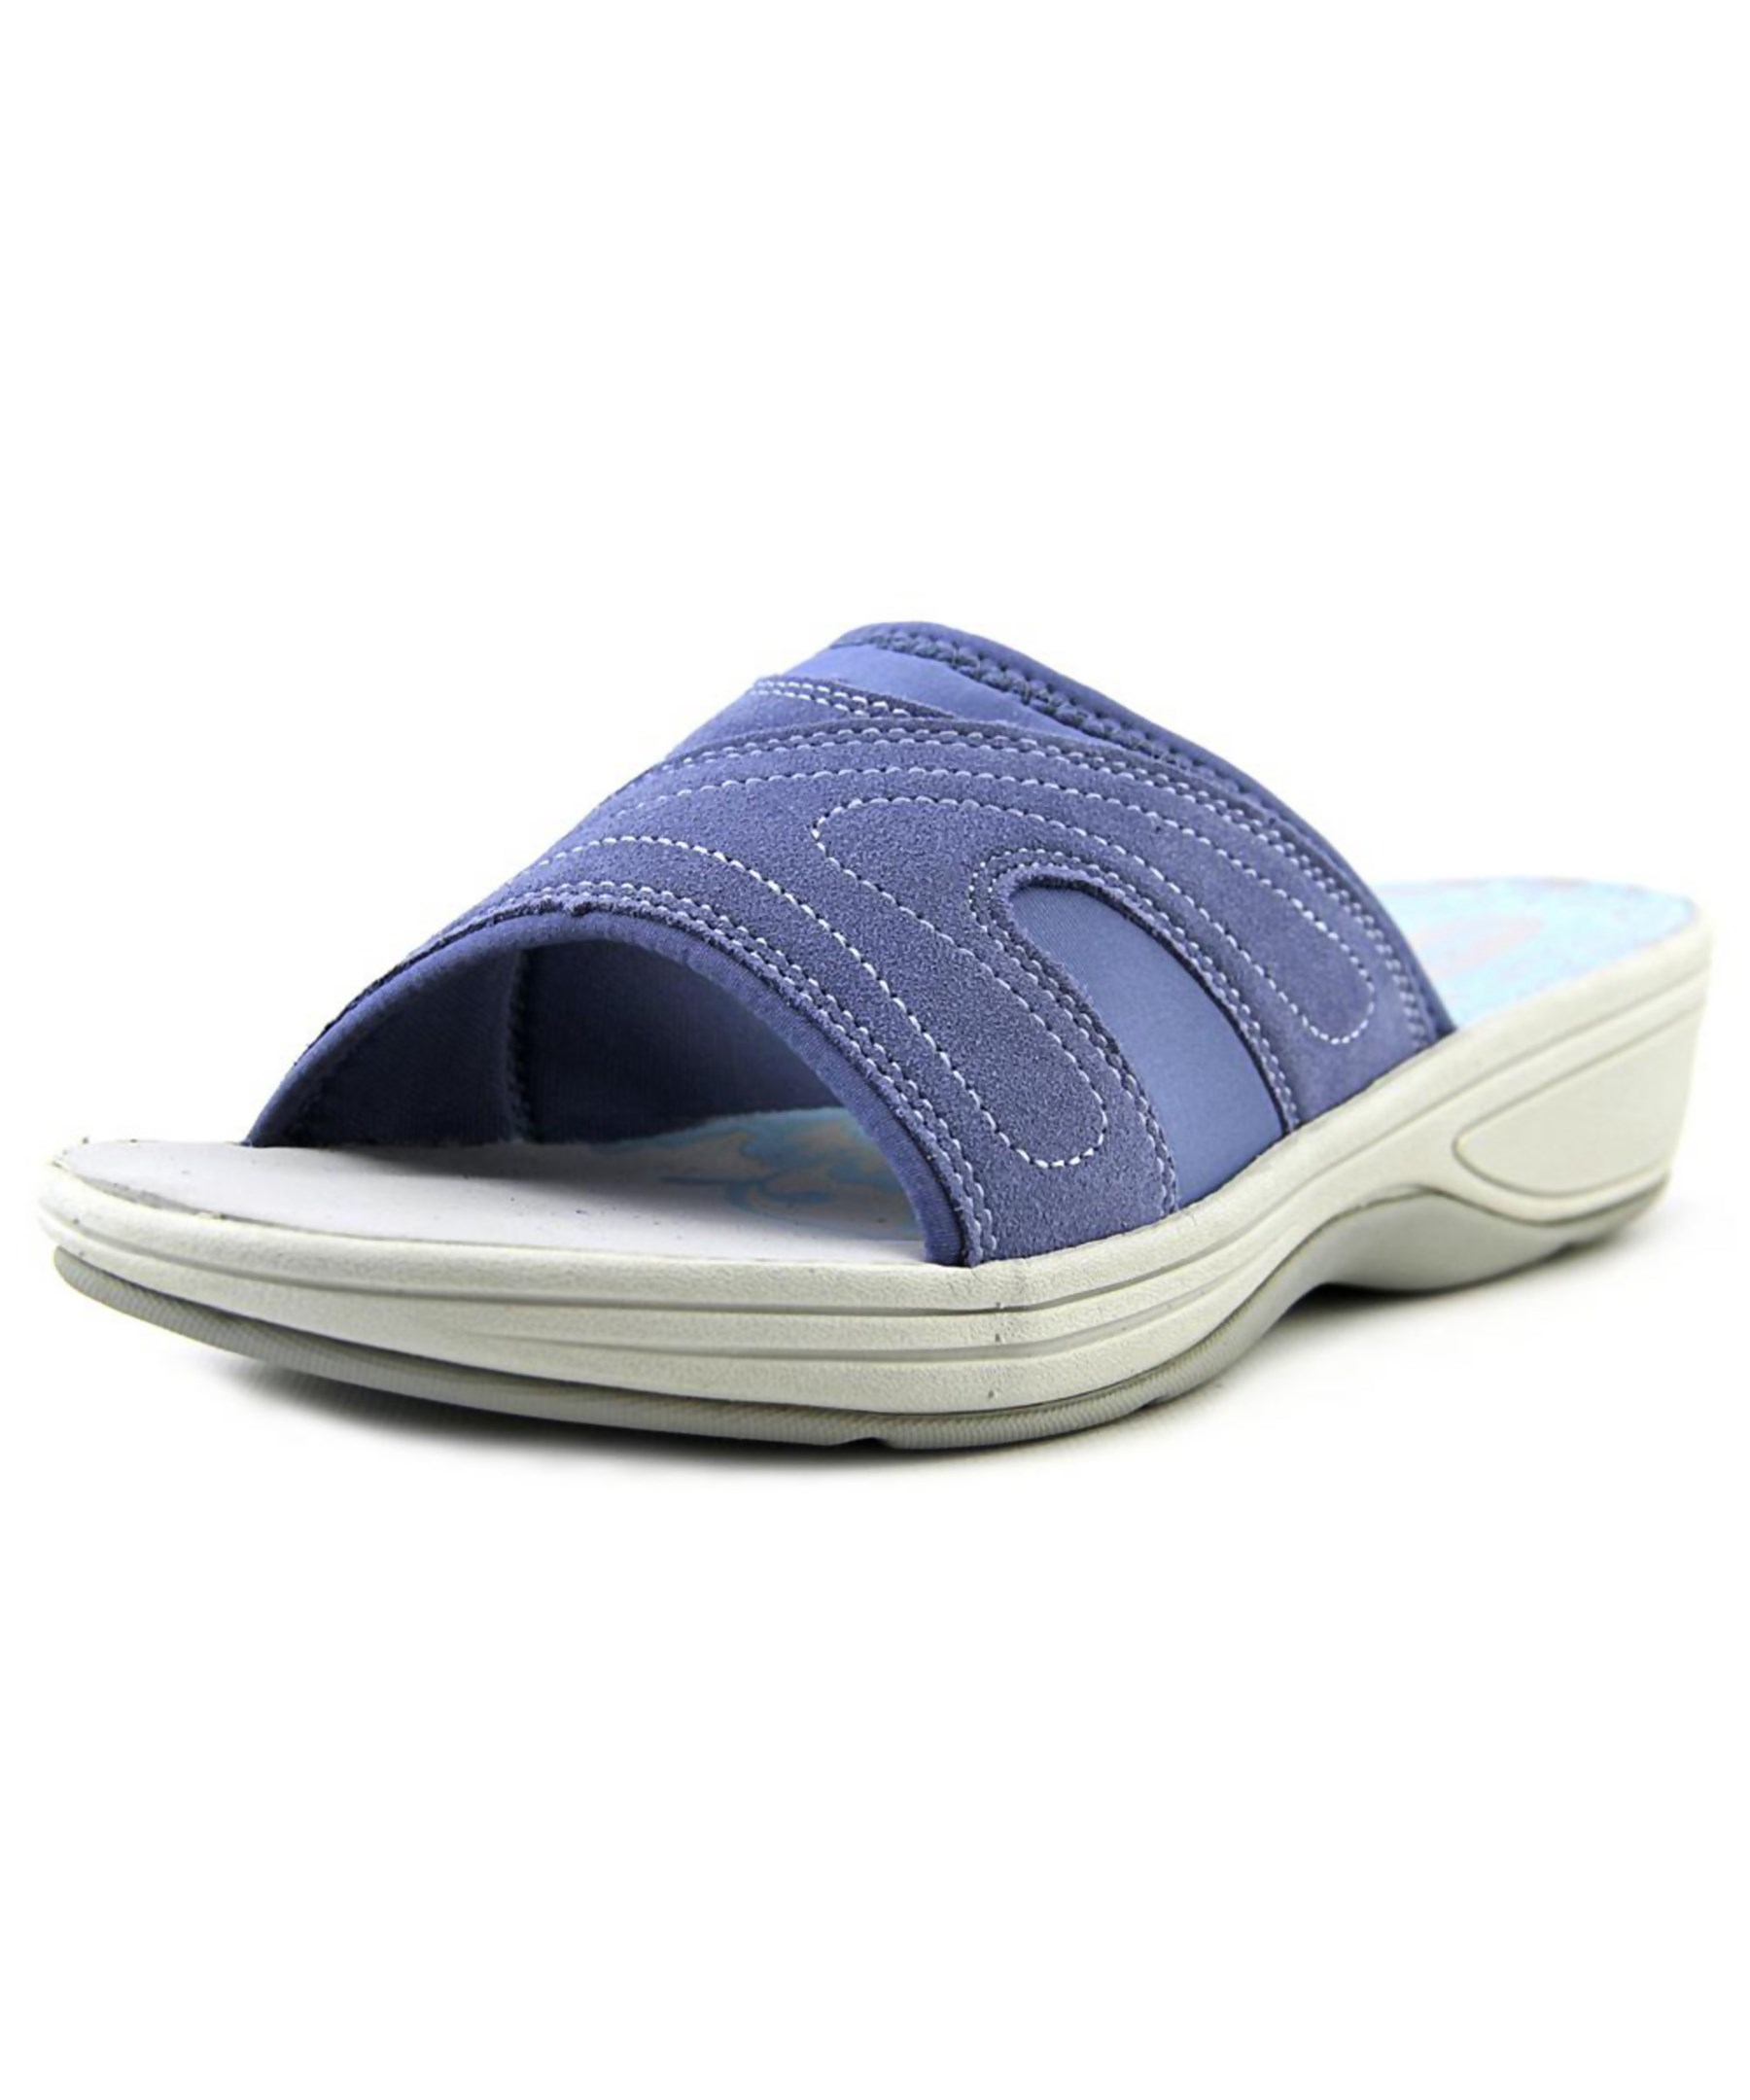 Easy spirit Haylea Women Open Toe Suede Blue Slides Sandal in ...